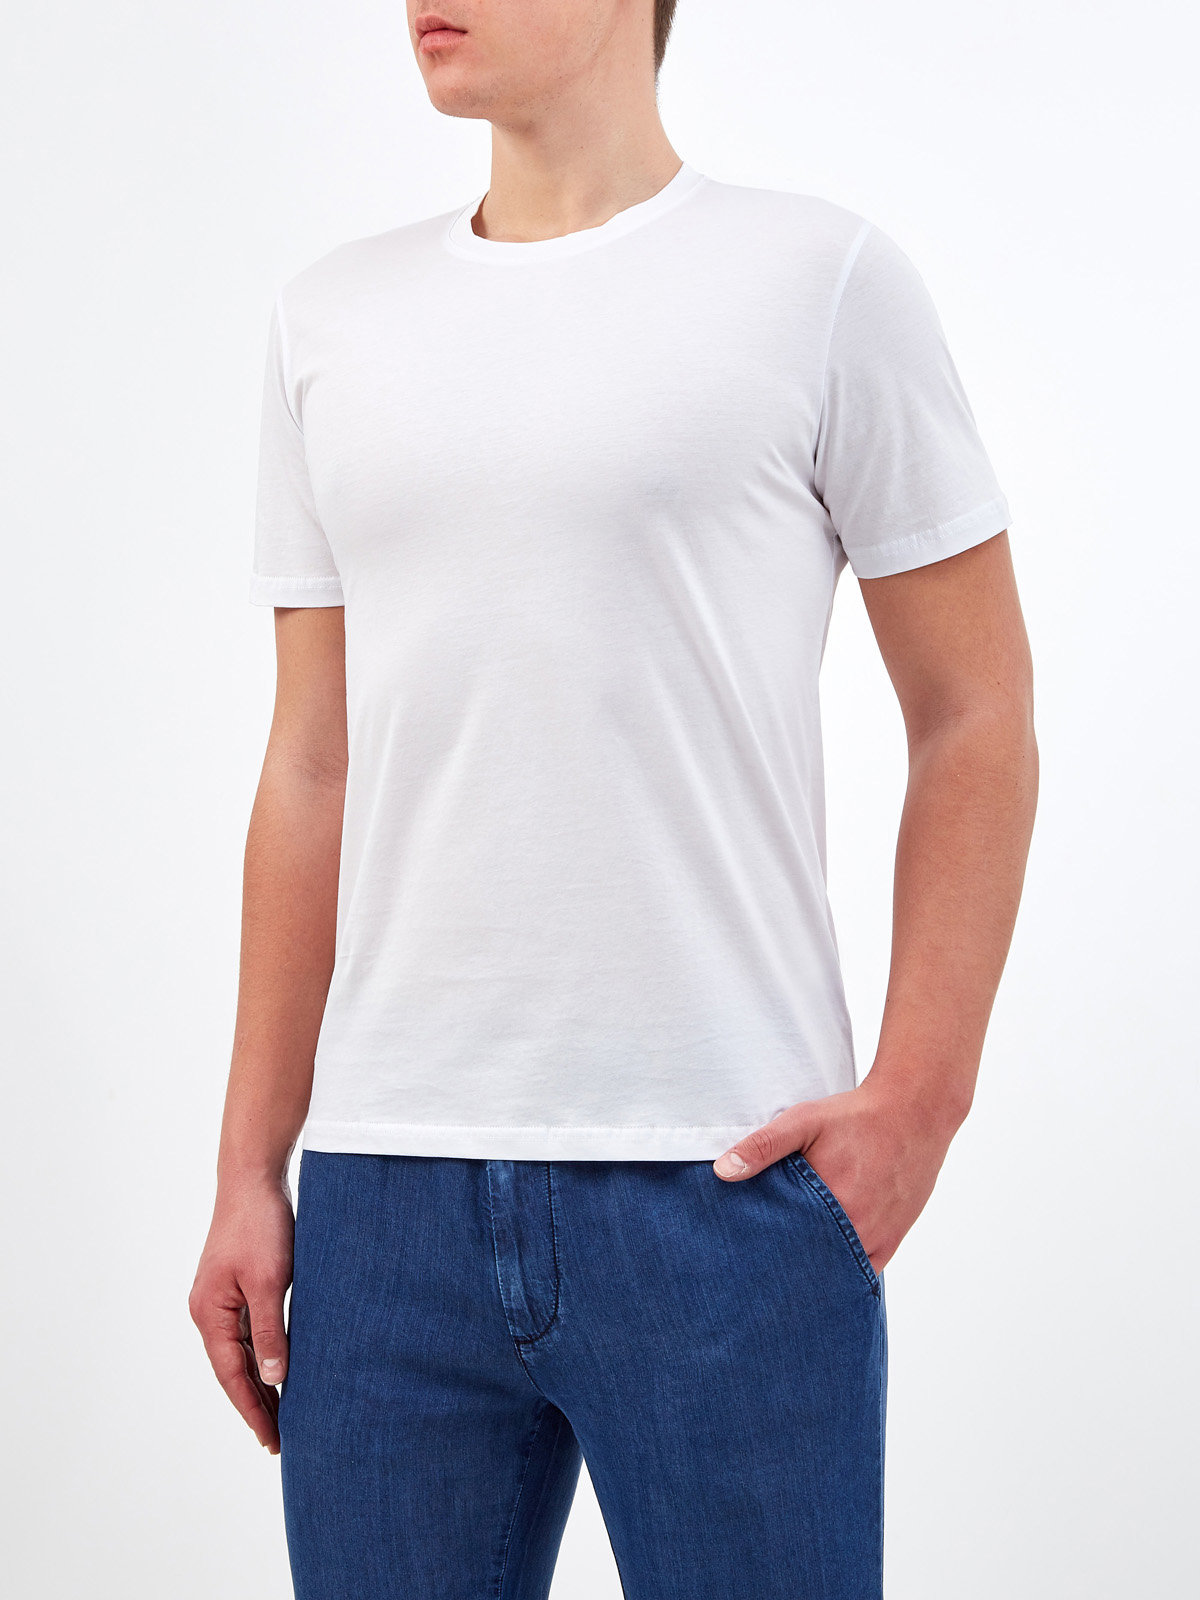 Белая футболка из гладкого хлопка джерси CUDGI, цвет белый, размер L;XL;2XL;M - фото 3